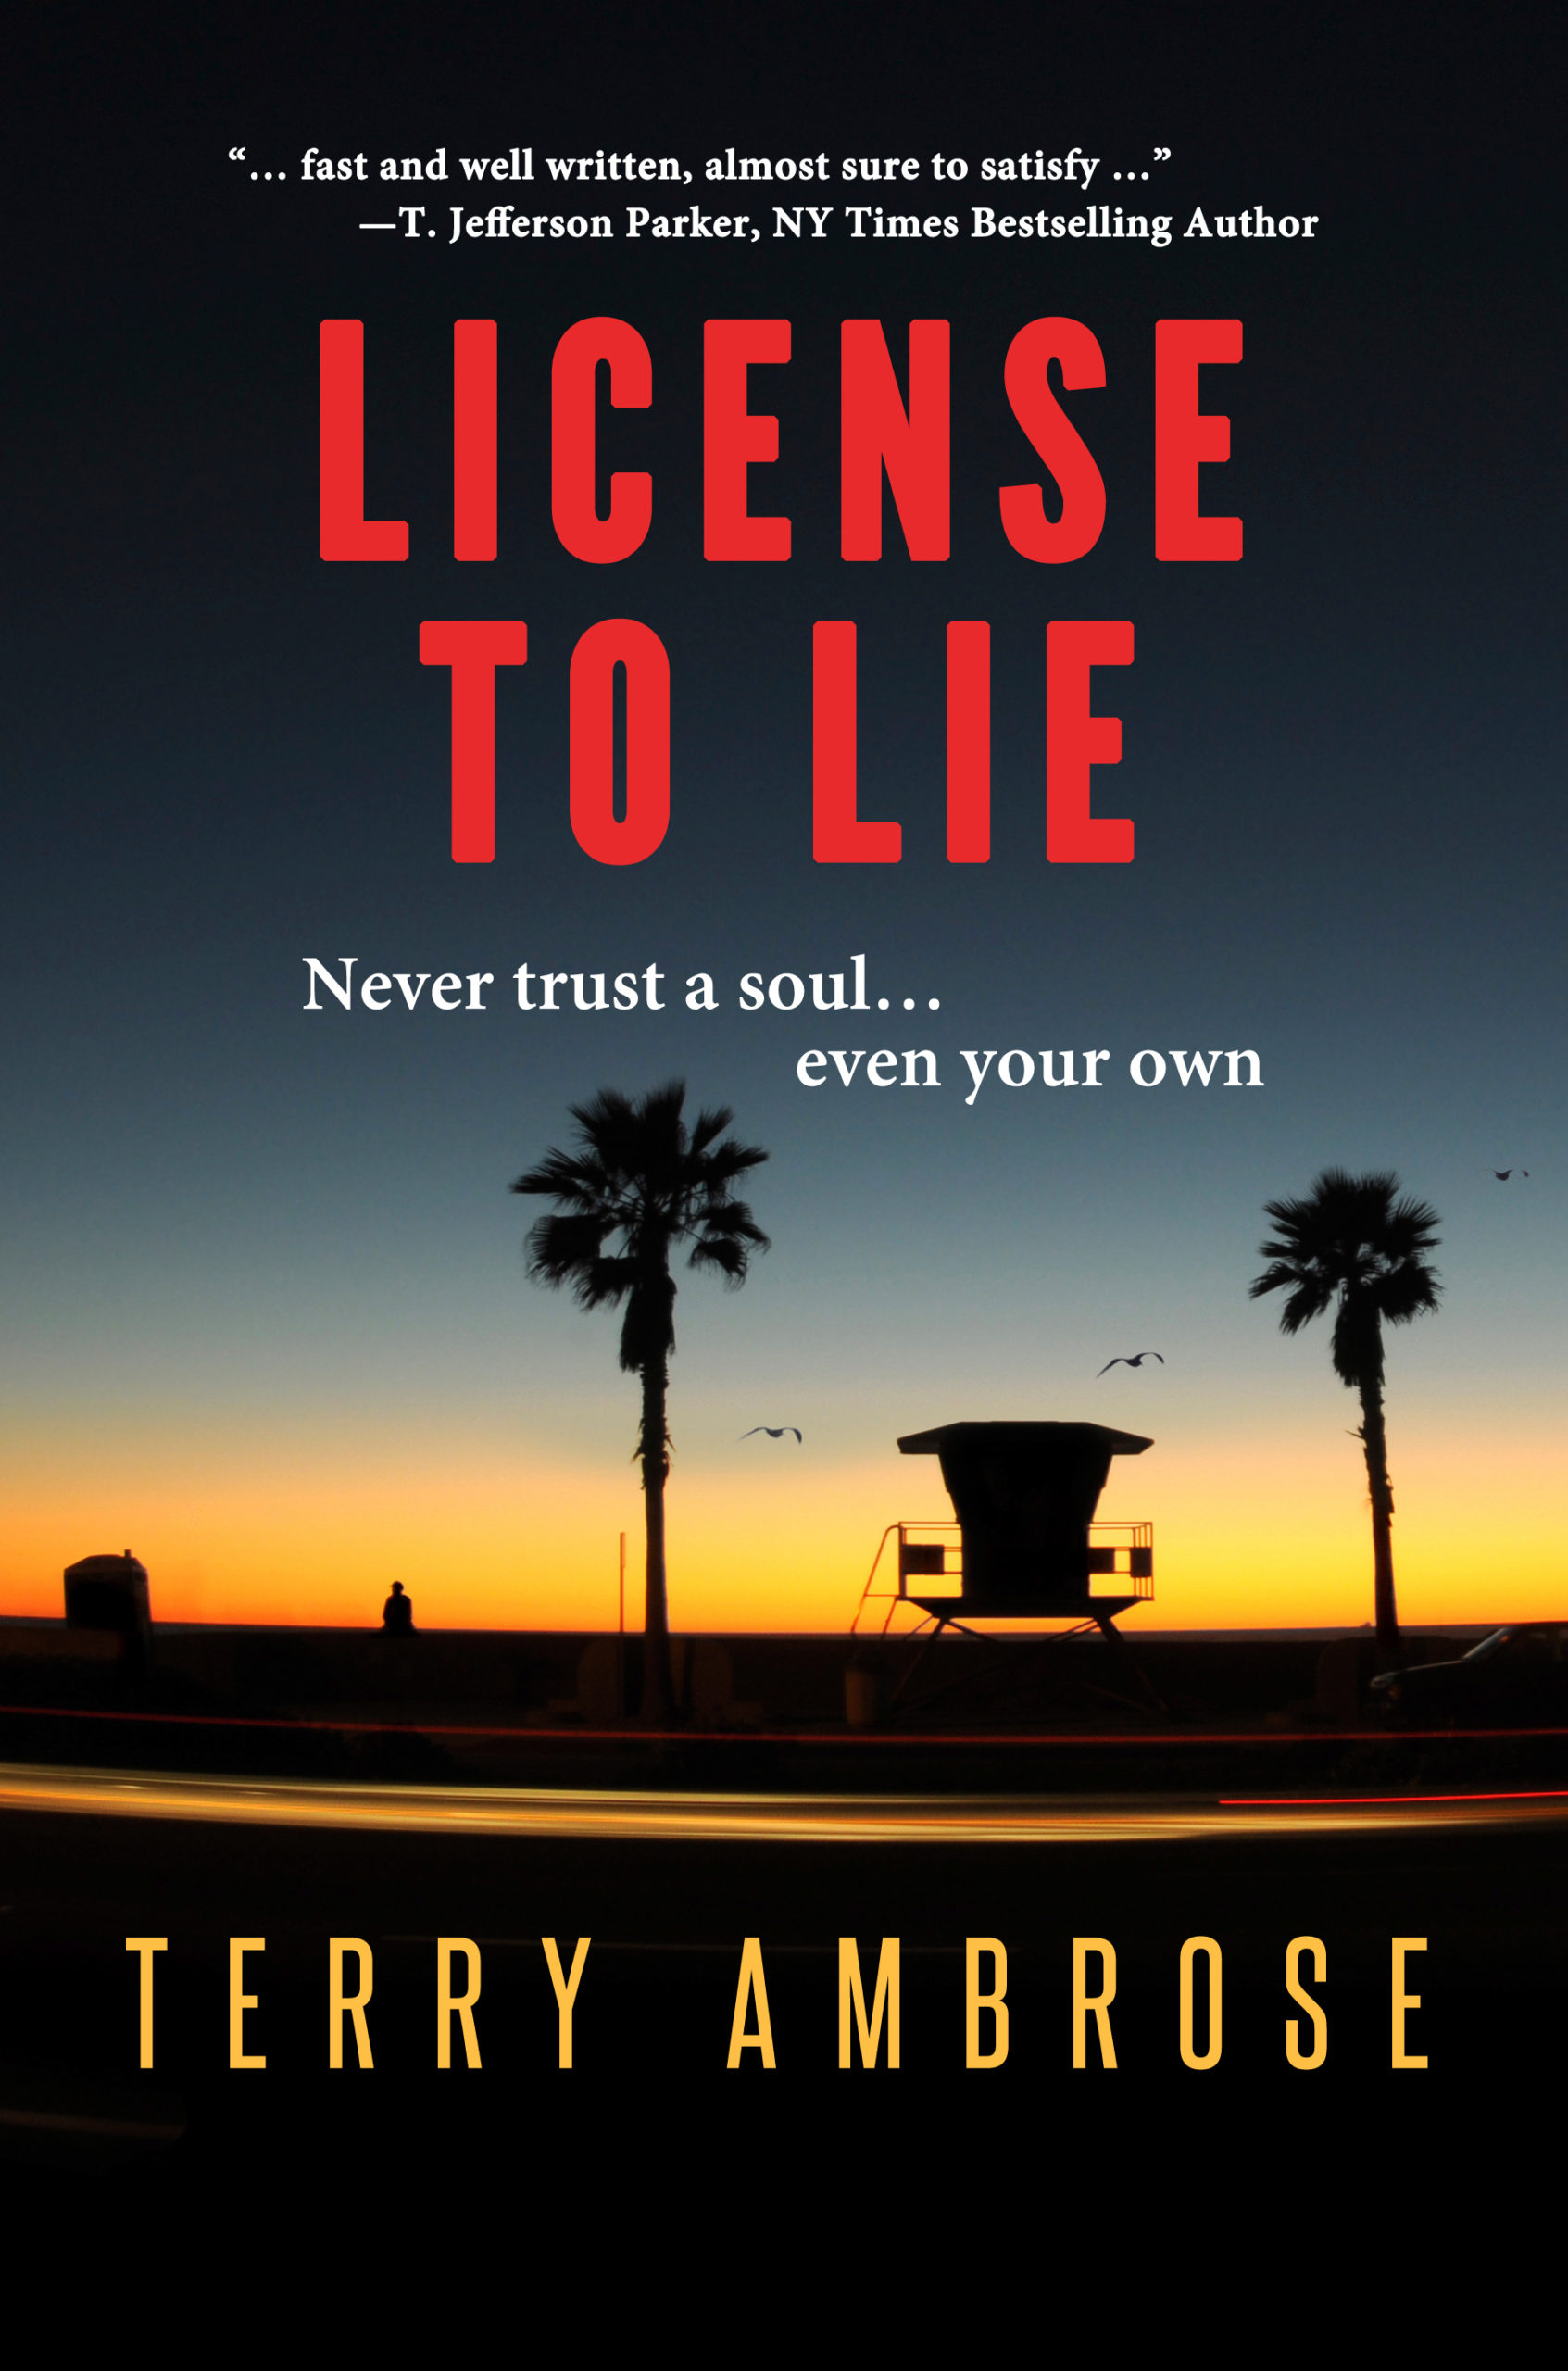 License to Lie